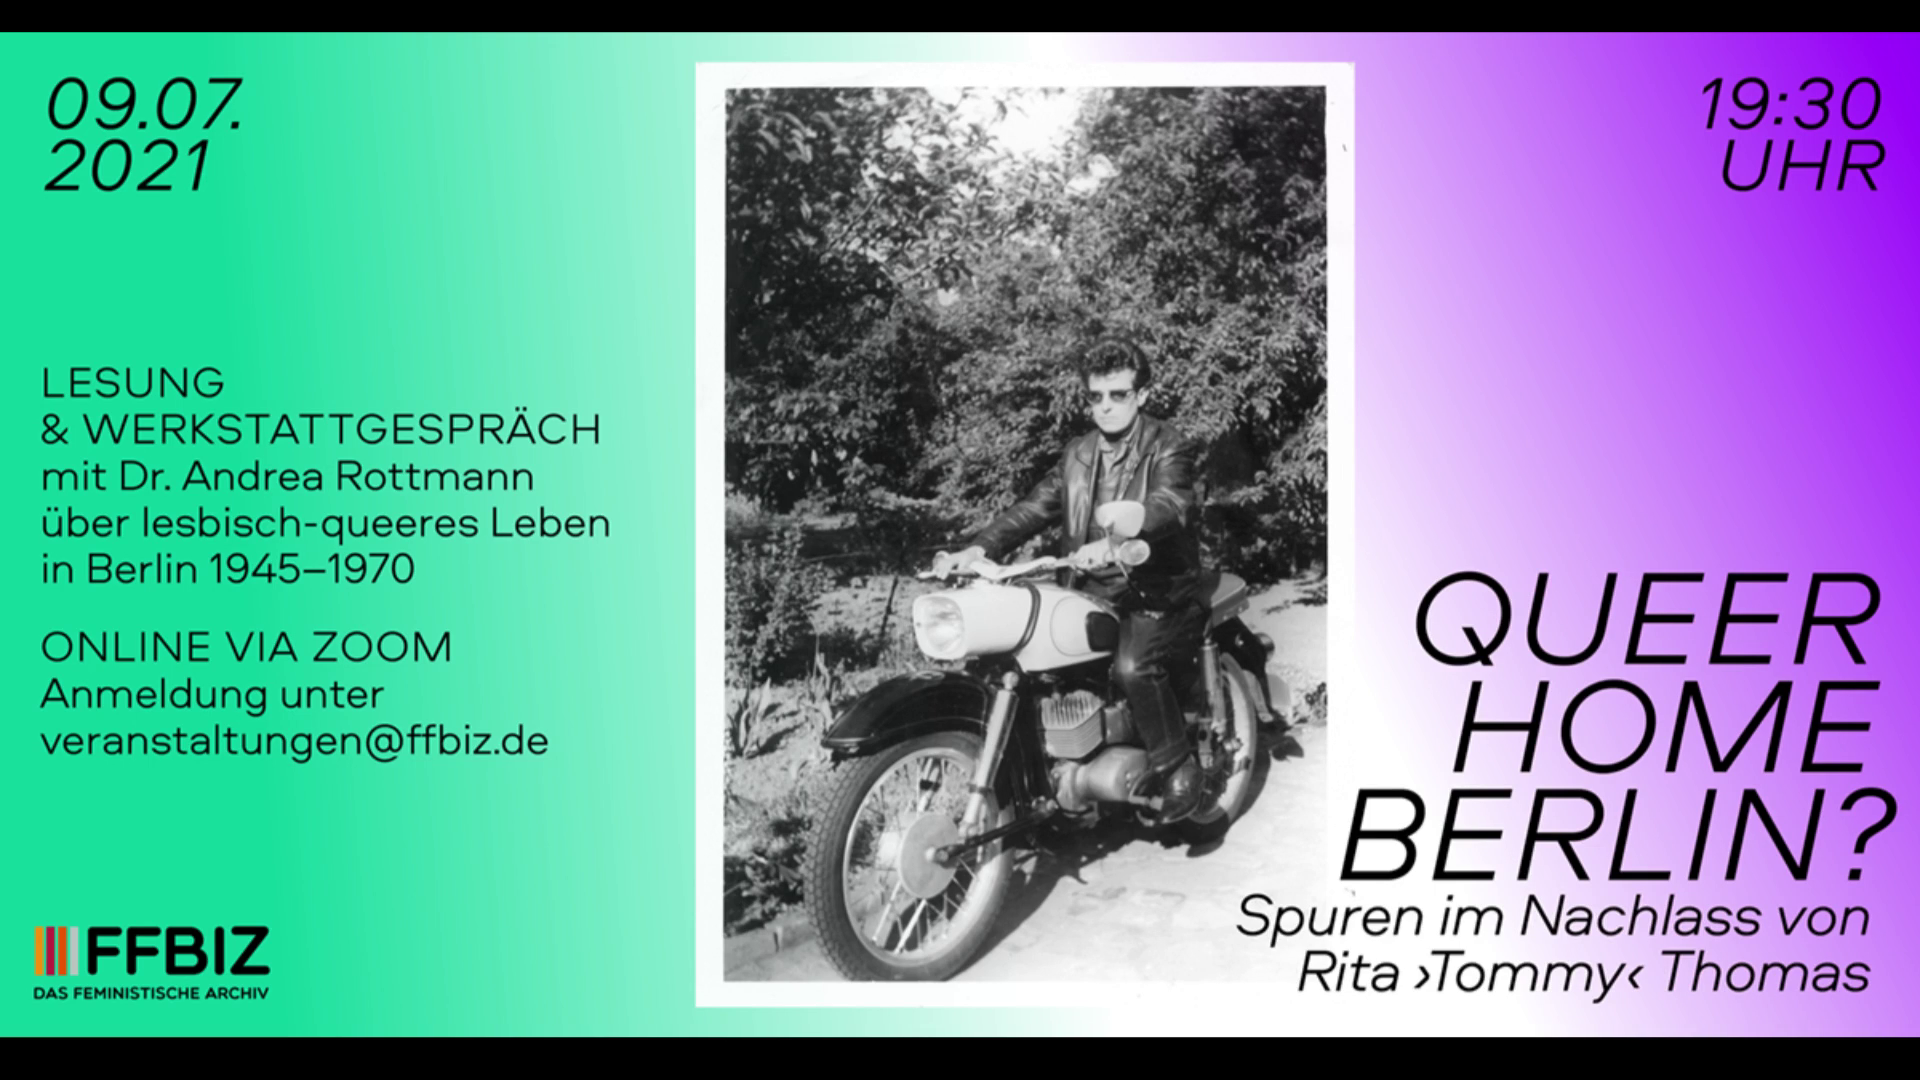 Queer Home Berlin? Spuren im Nachlass von Rita "Tommy" Thomas